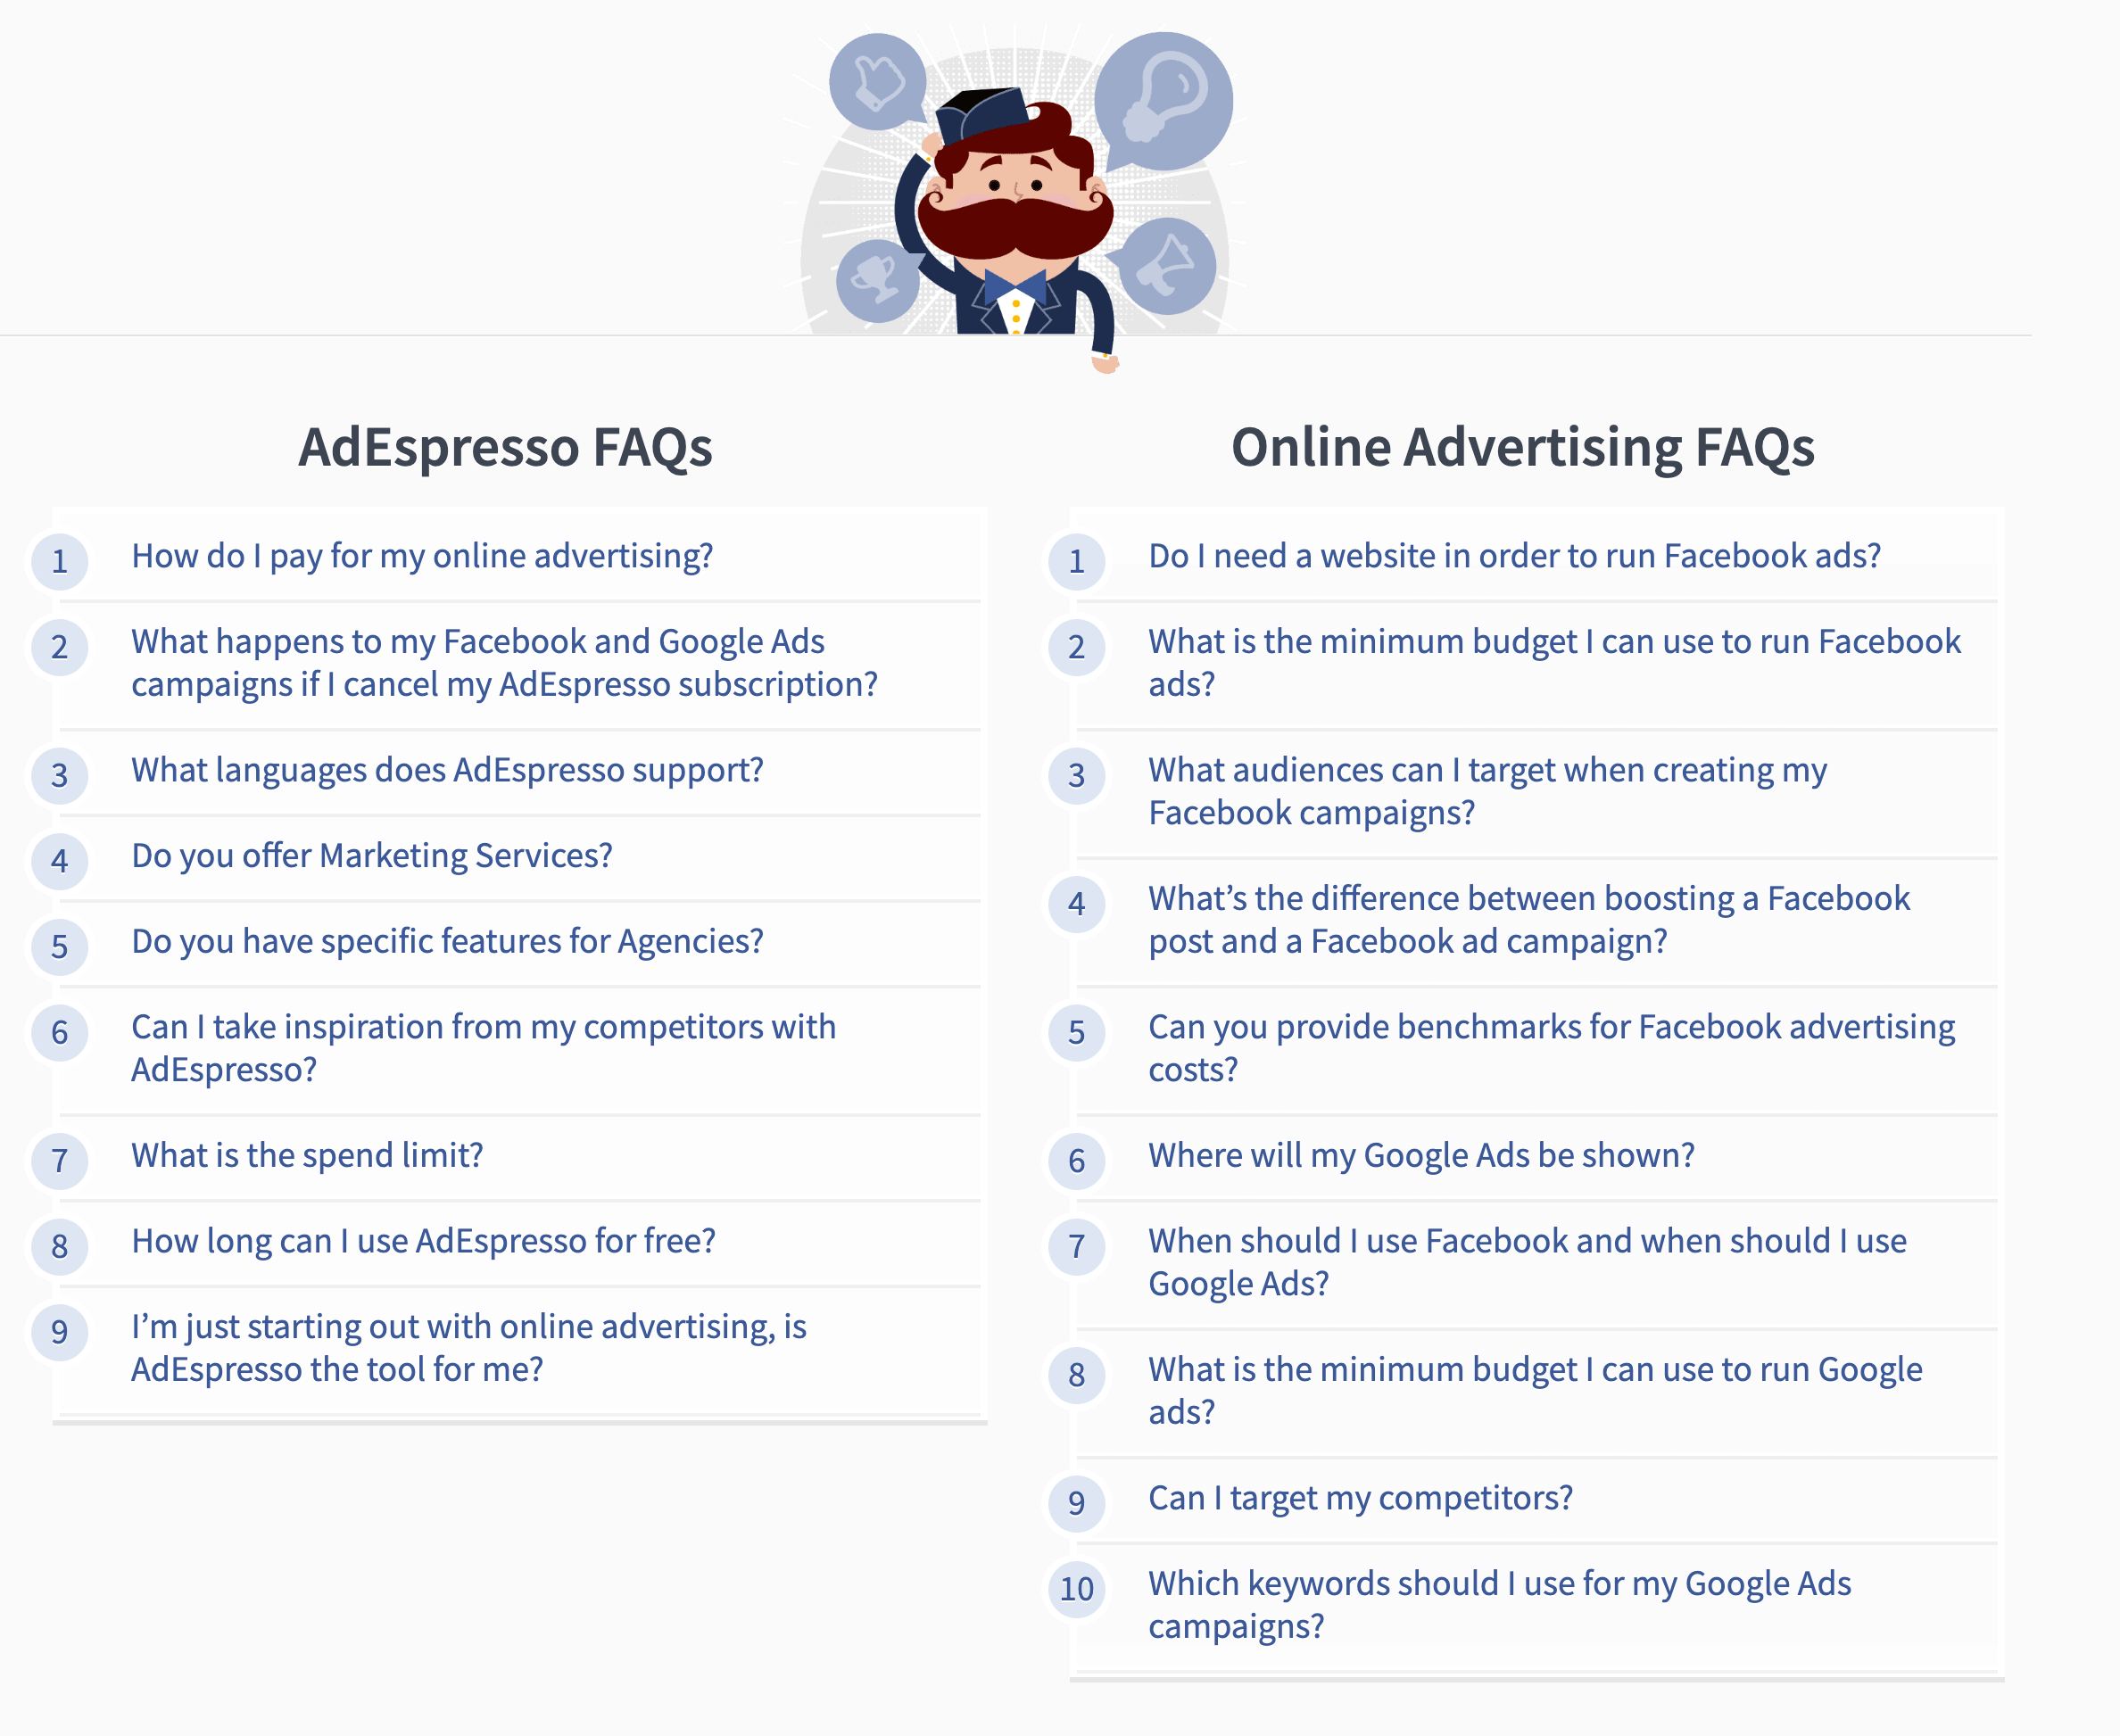 AdEspresso's FAQ page